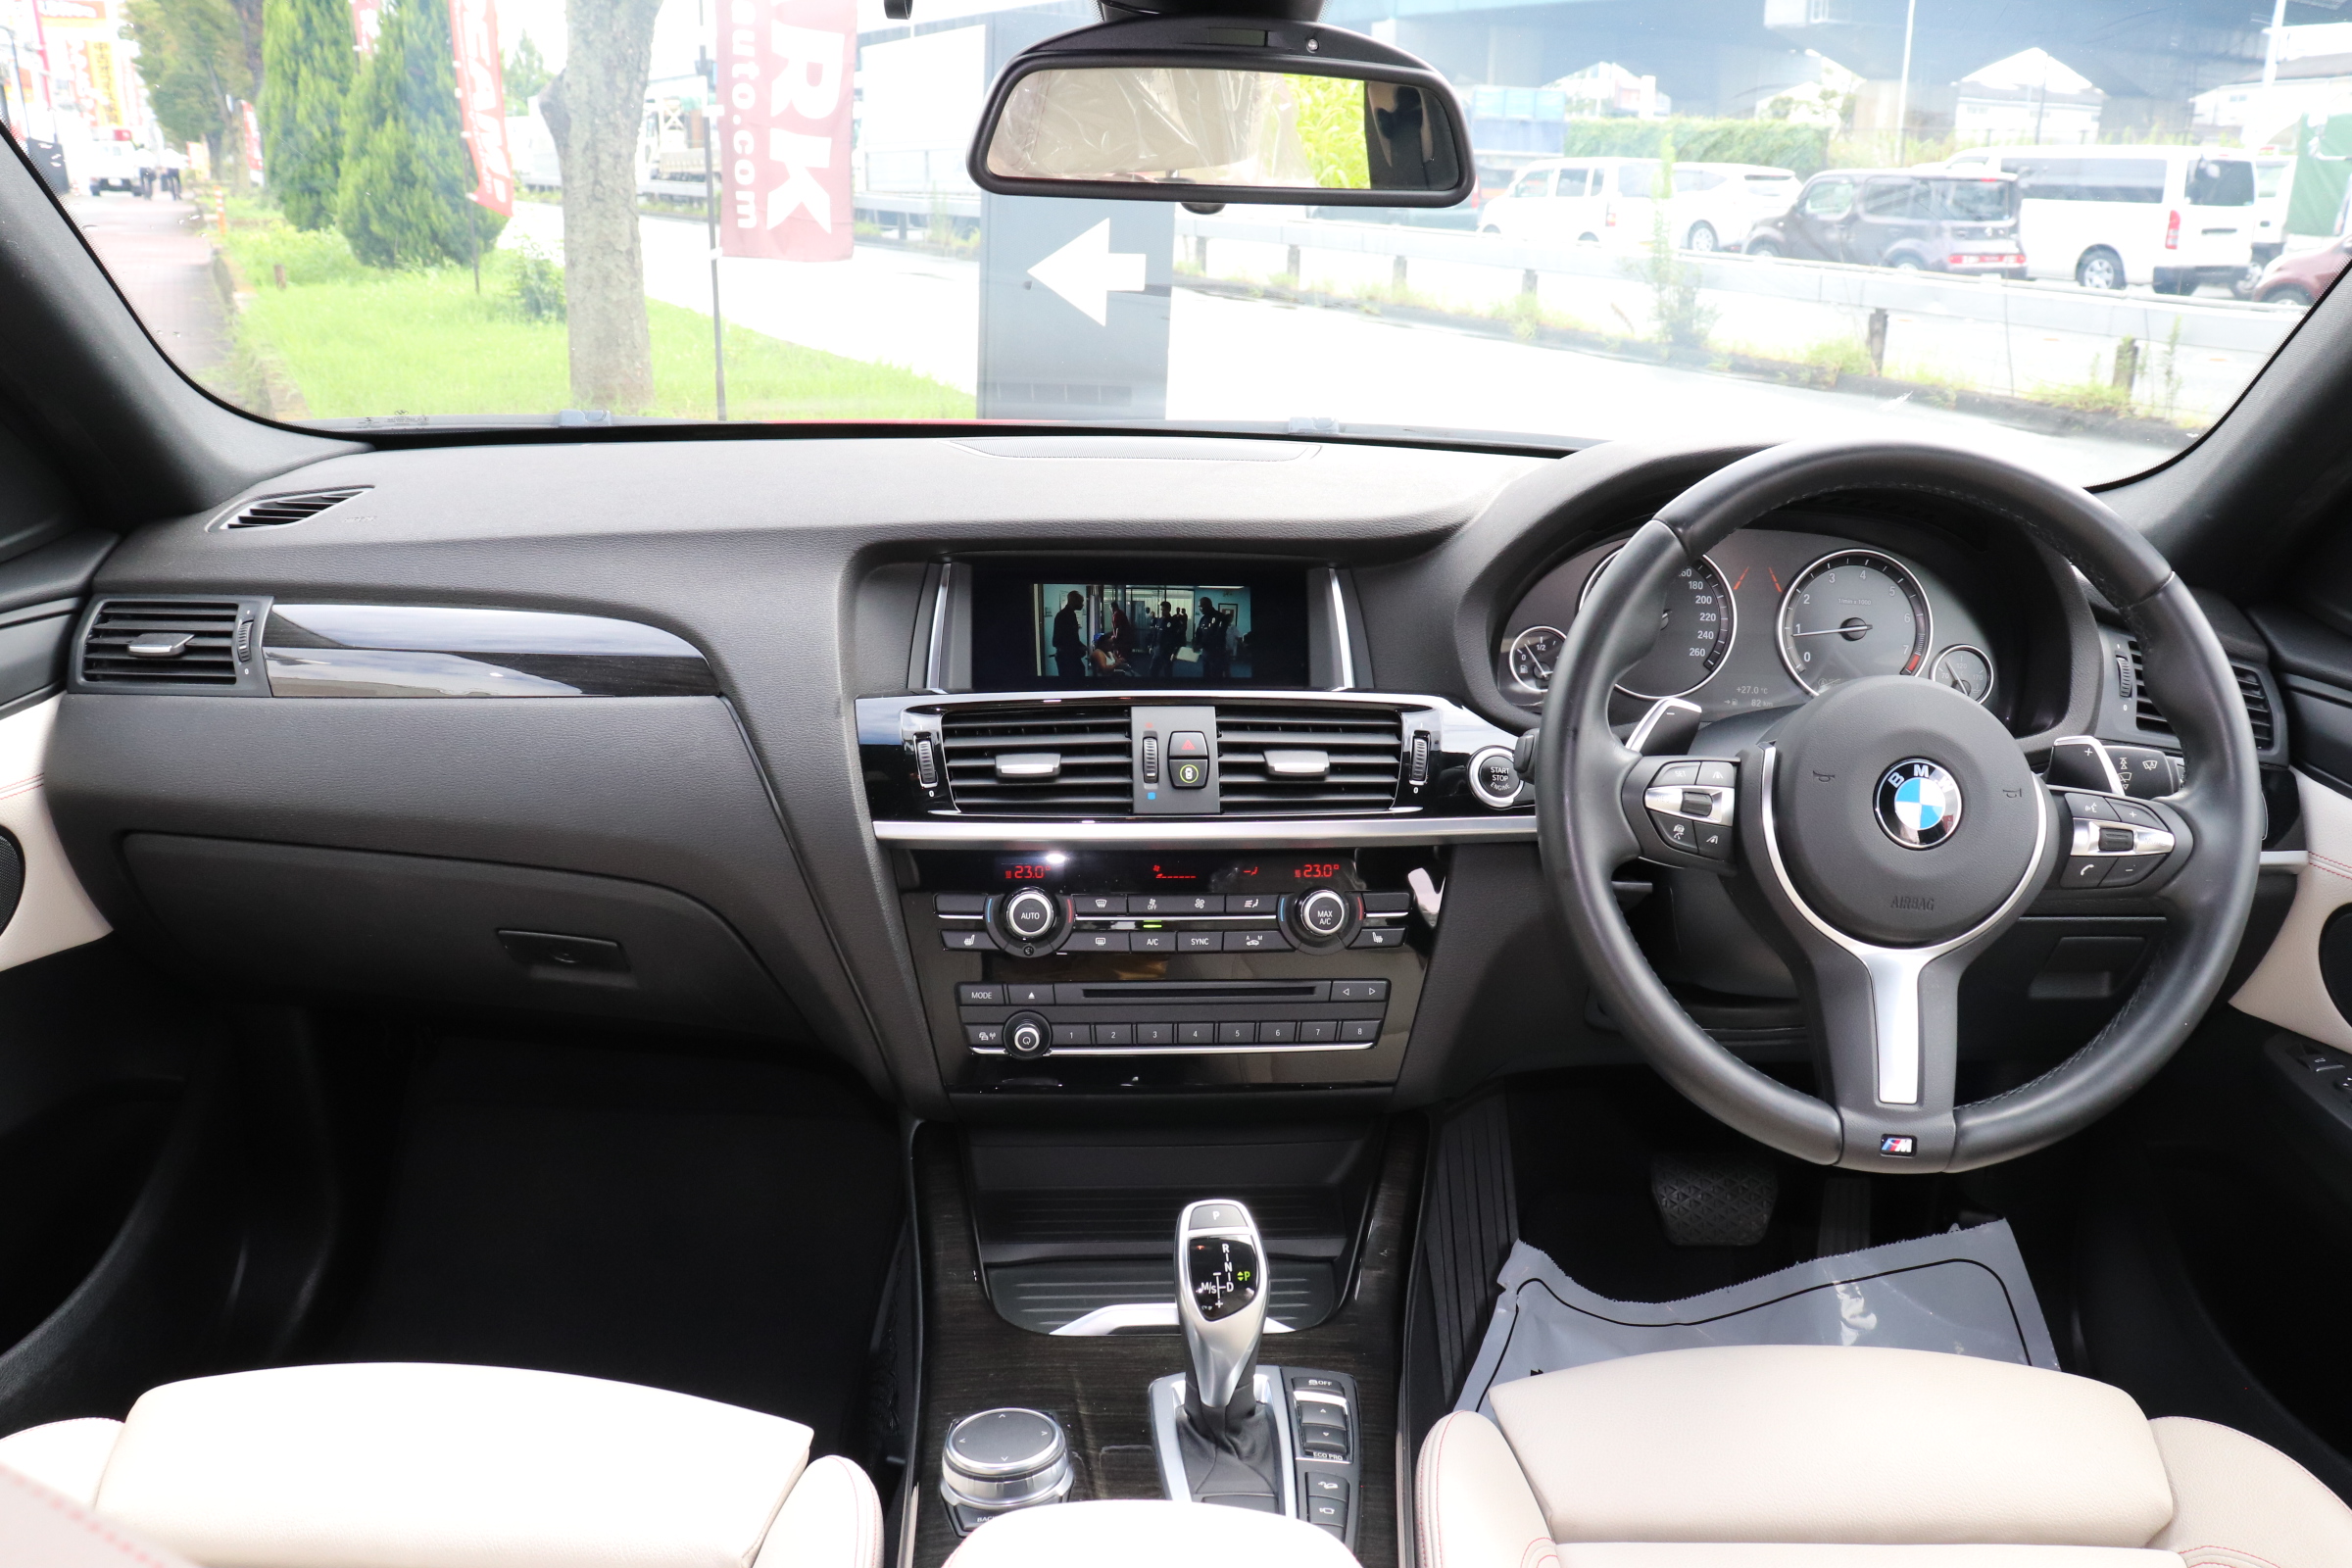 X4 xDrive 28i Mスポーツ 4WD 20インチACCレーンチェンジW LEDヘッド Mスポステア車両画像10